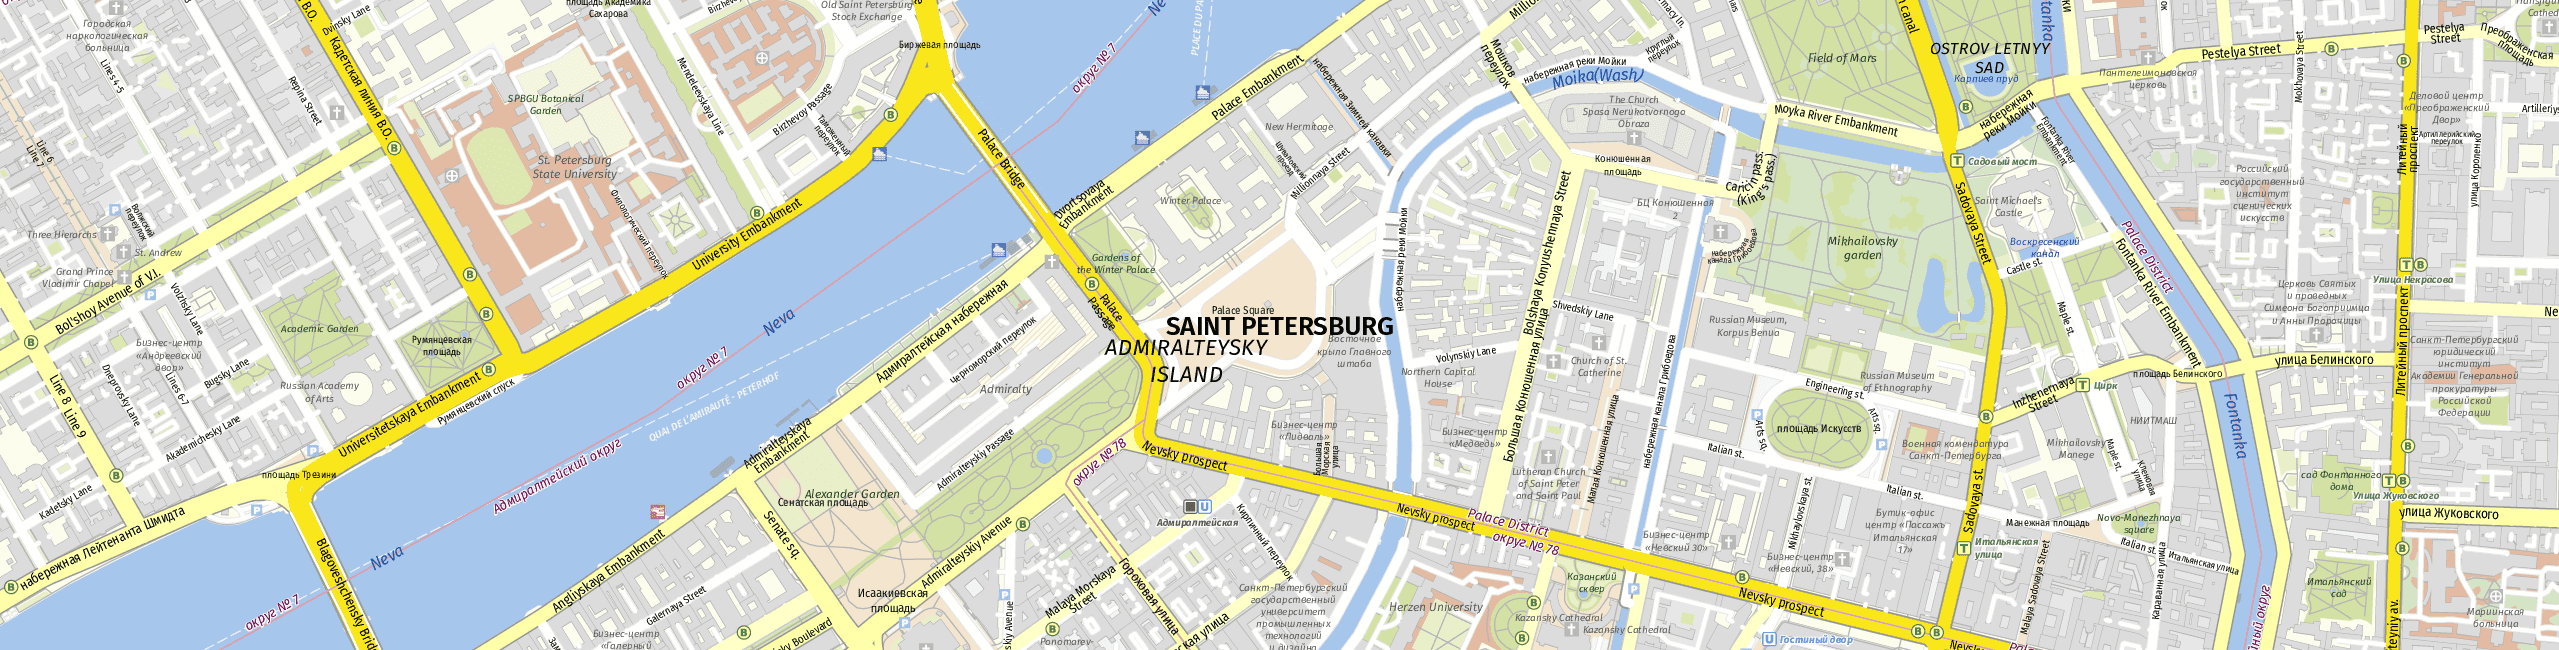 Stadtplan Sankt Petersburg zum Downloaden.